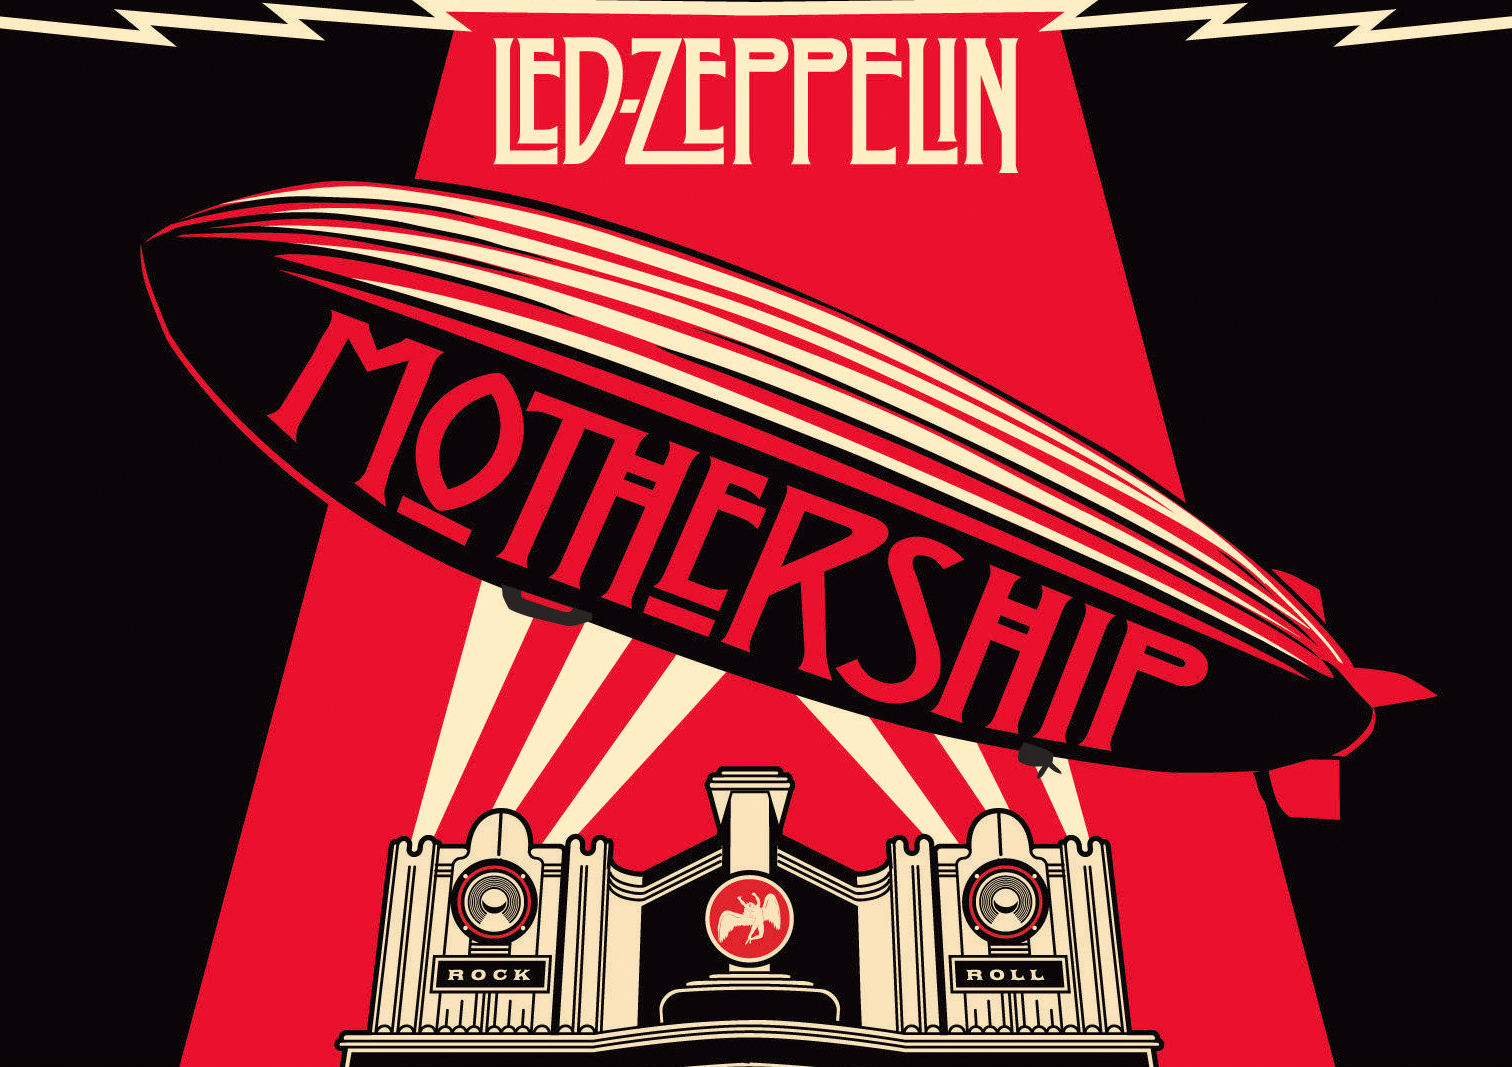 led zeppelin, hard rock, album cover, music cellphone